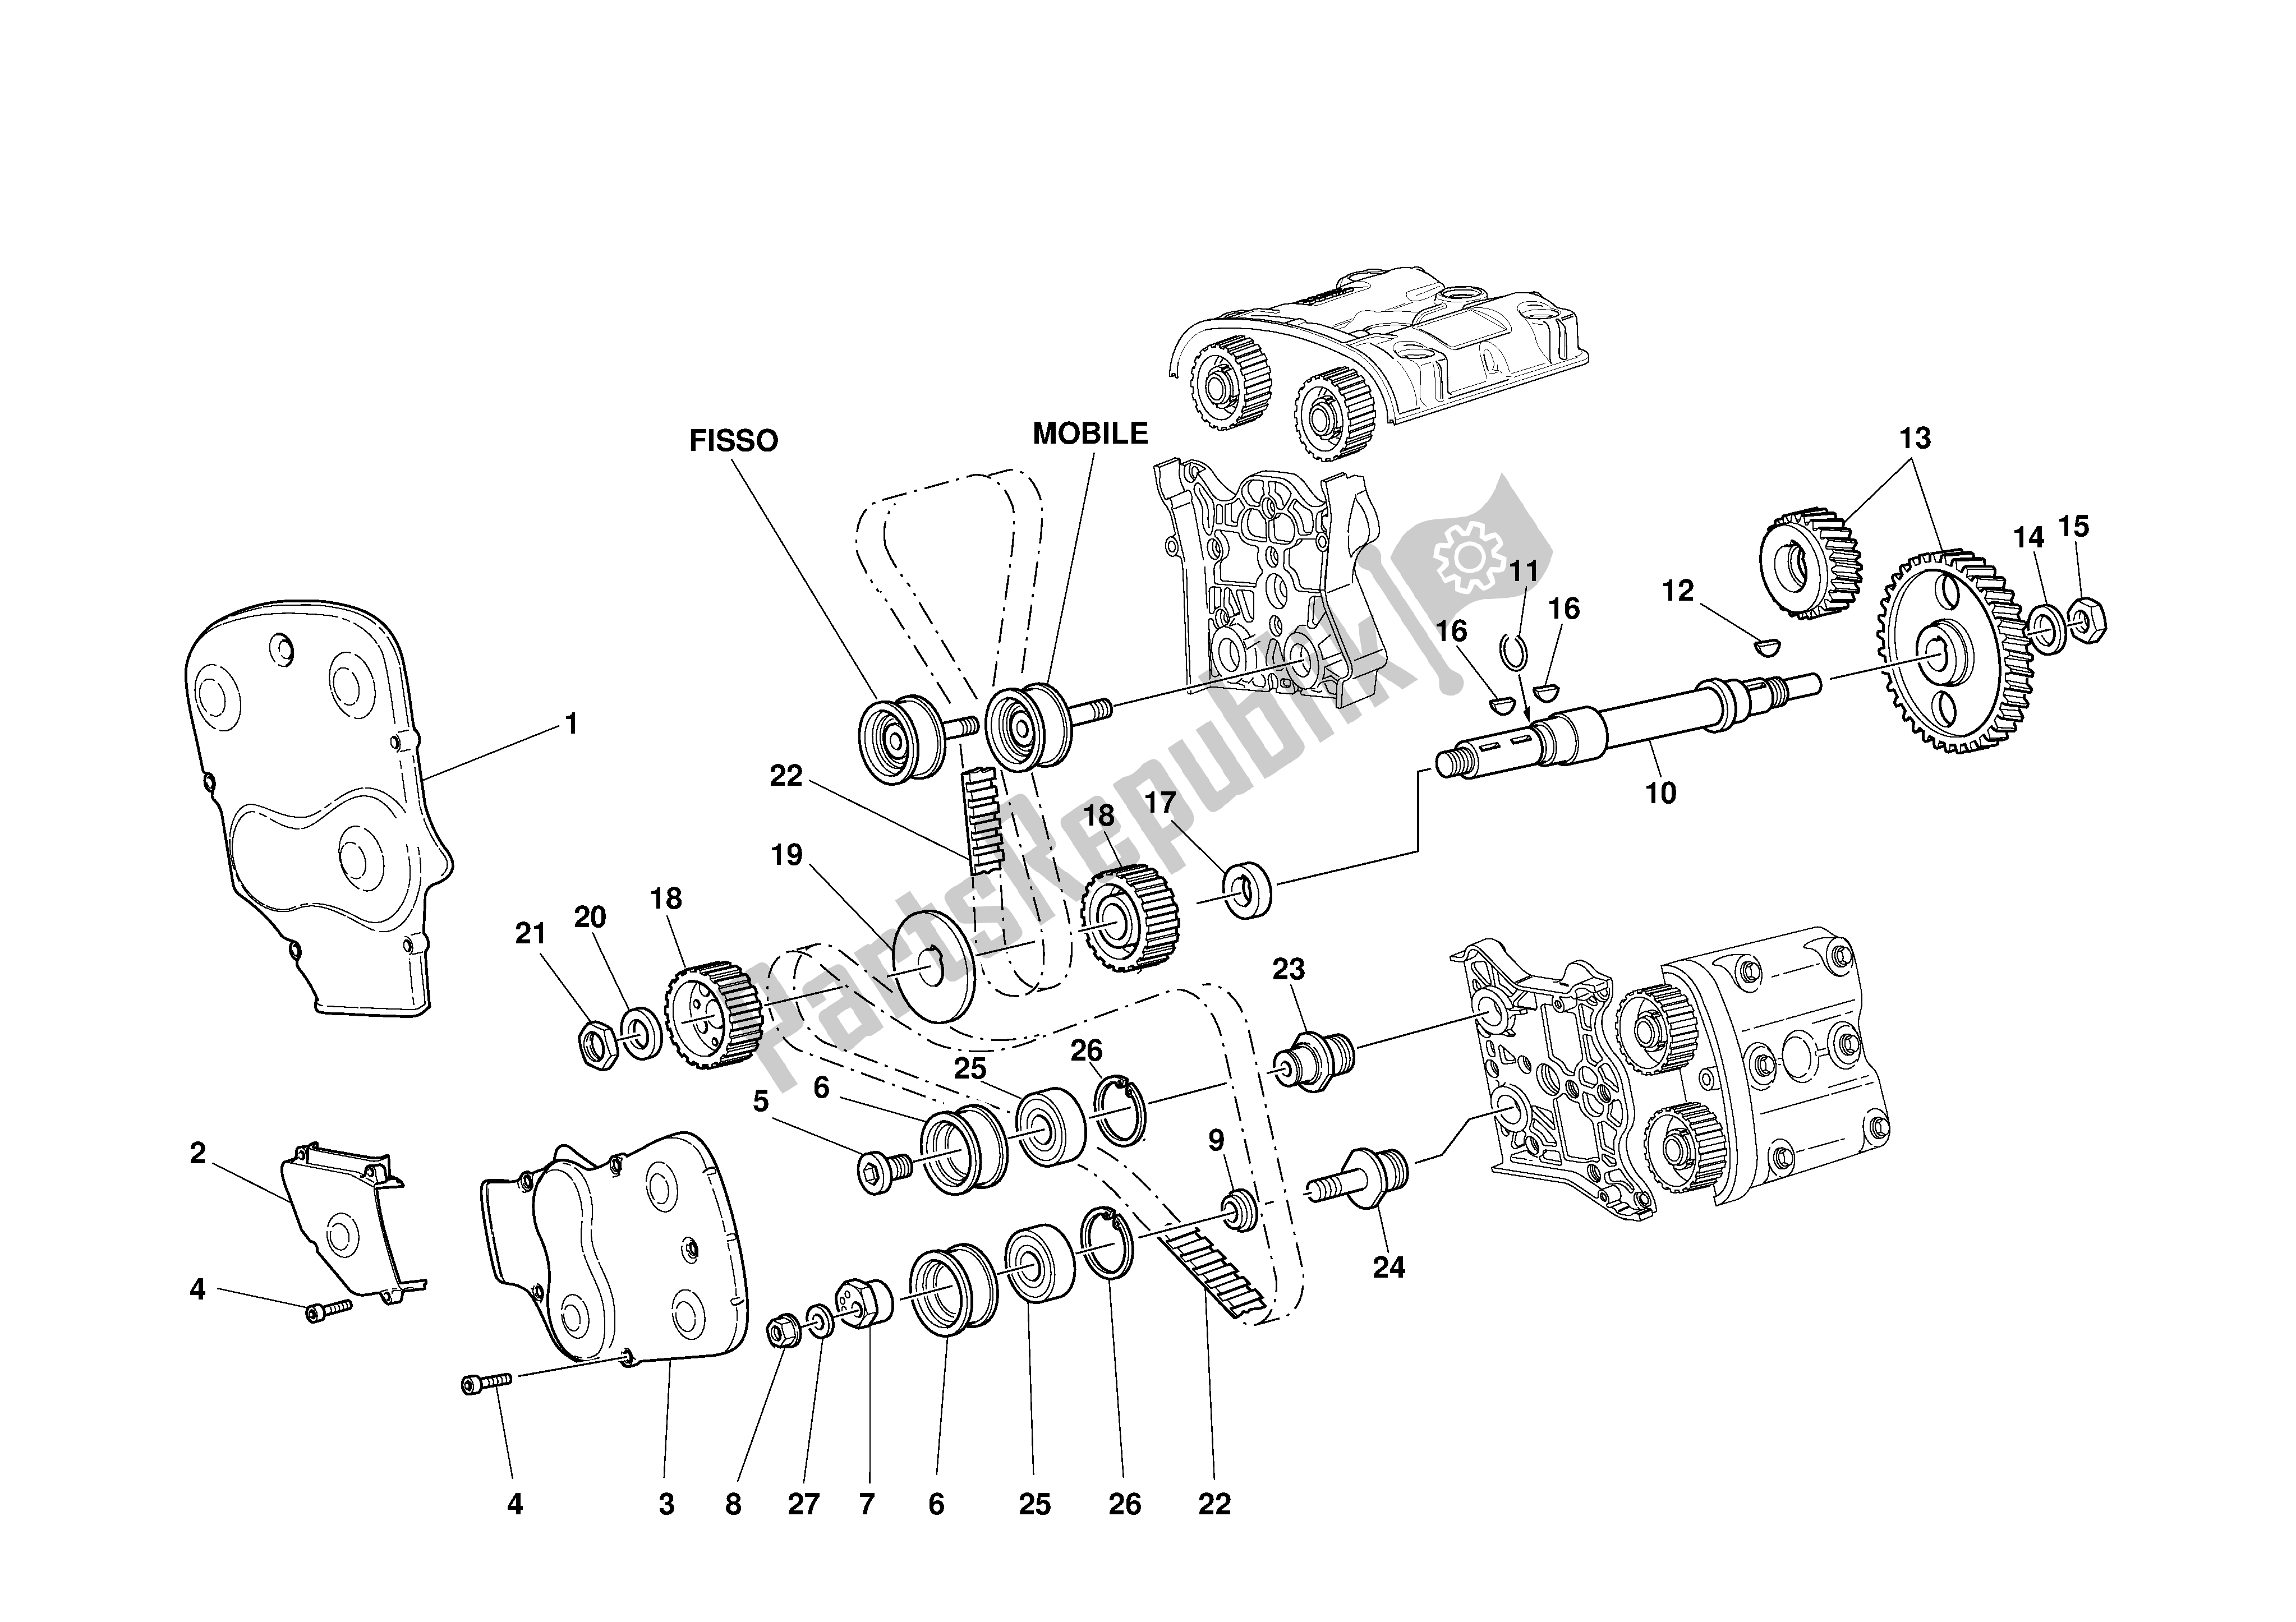 Todas las partes para Sincronización de Ducati 998S Bayliss 2002